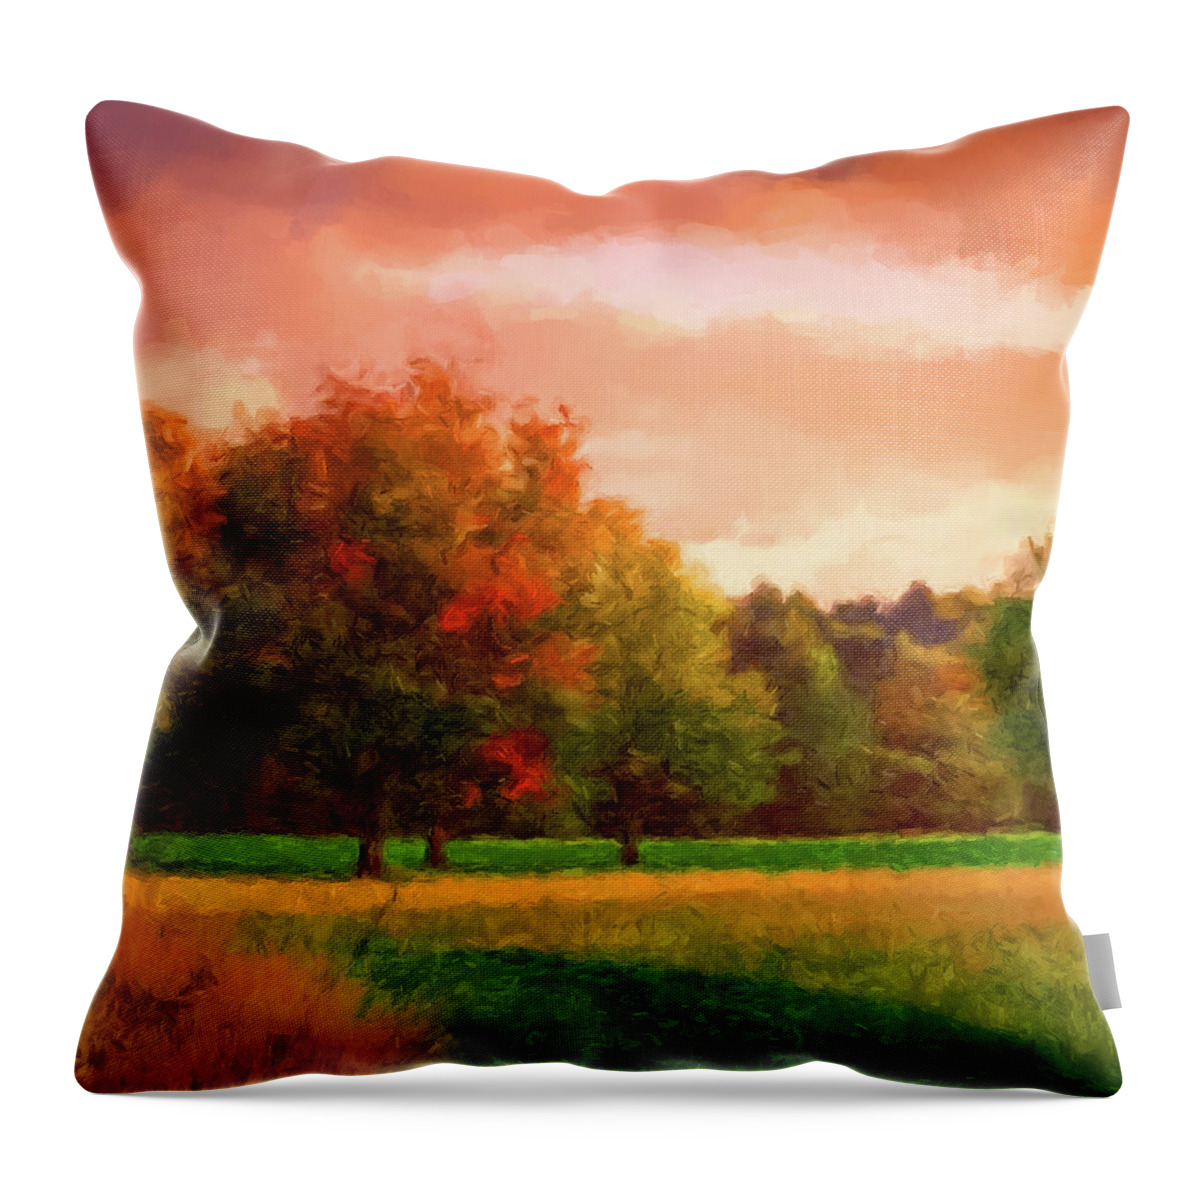 Sunset Throw Pillow featuring the digital art Sunset Field by Gary Grayson